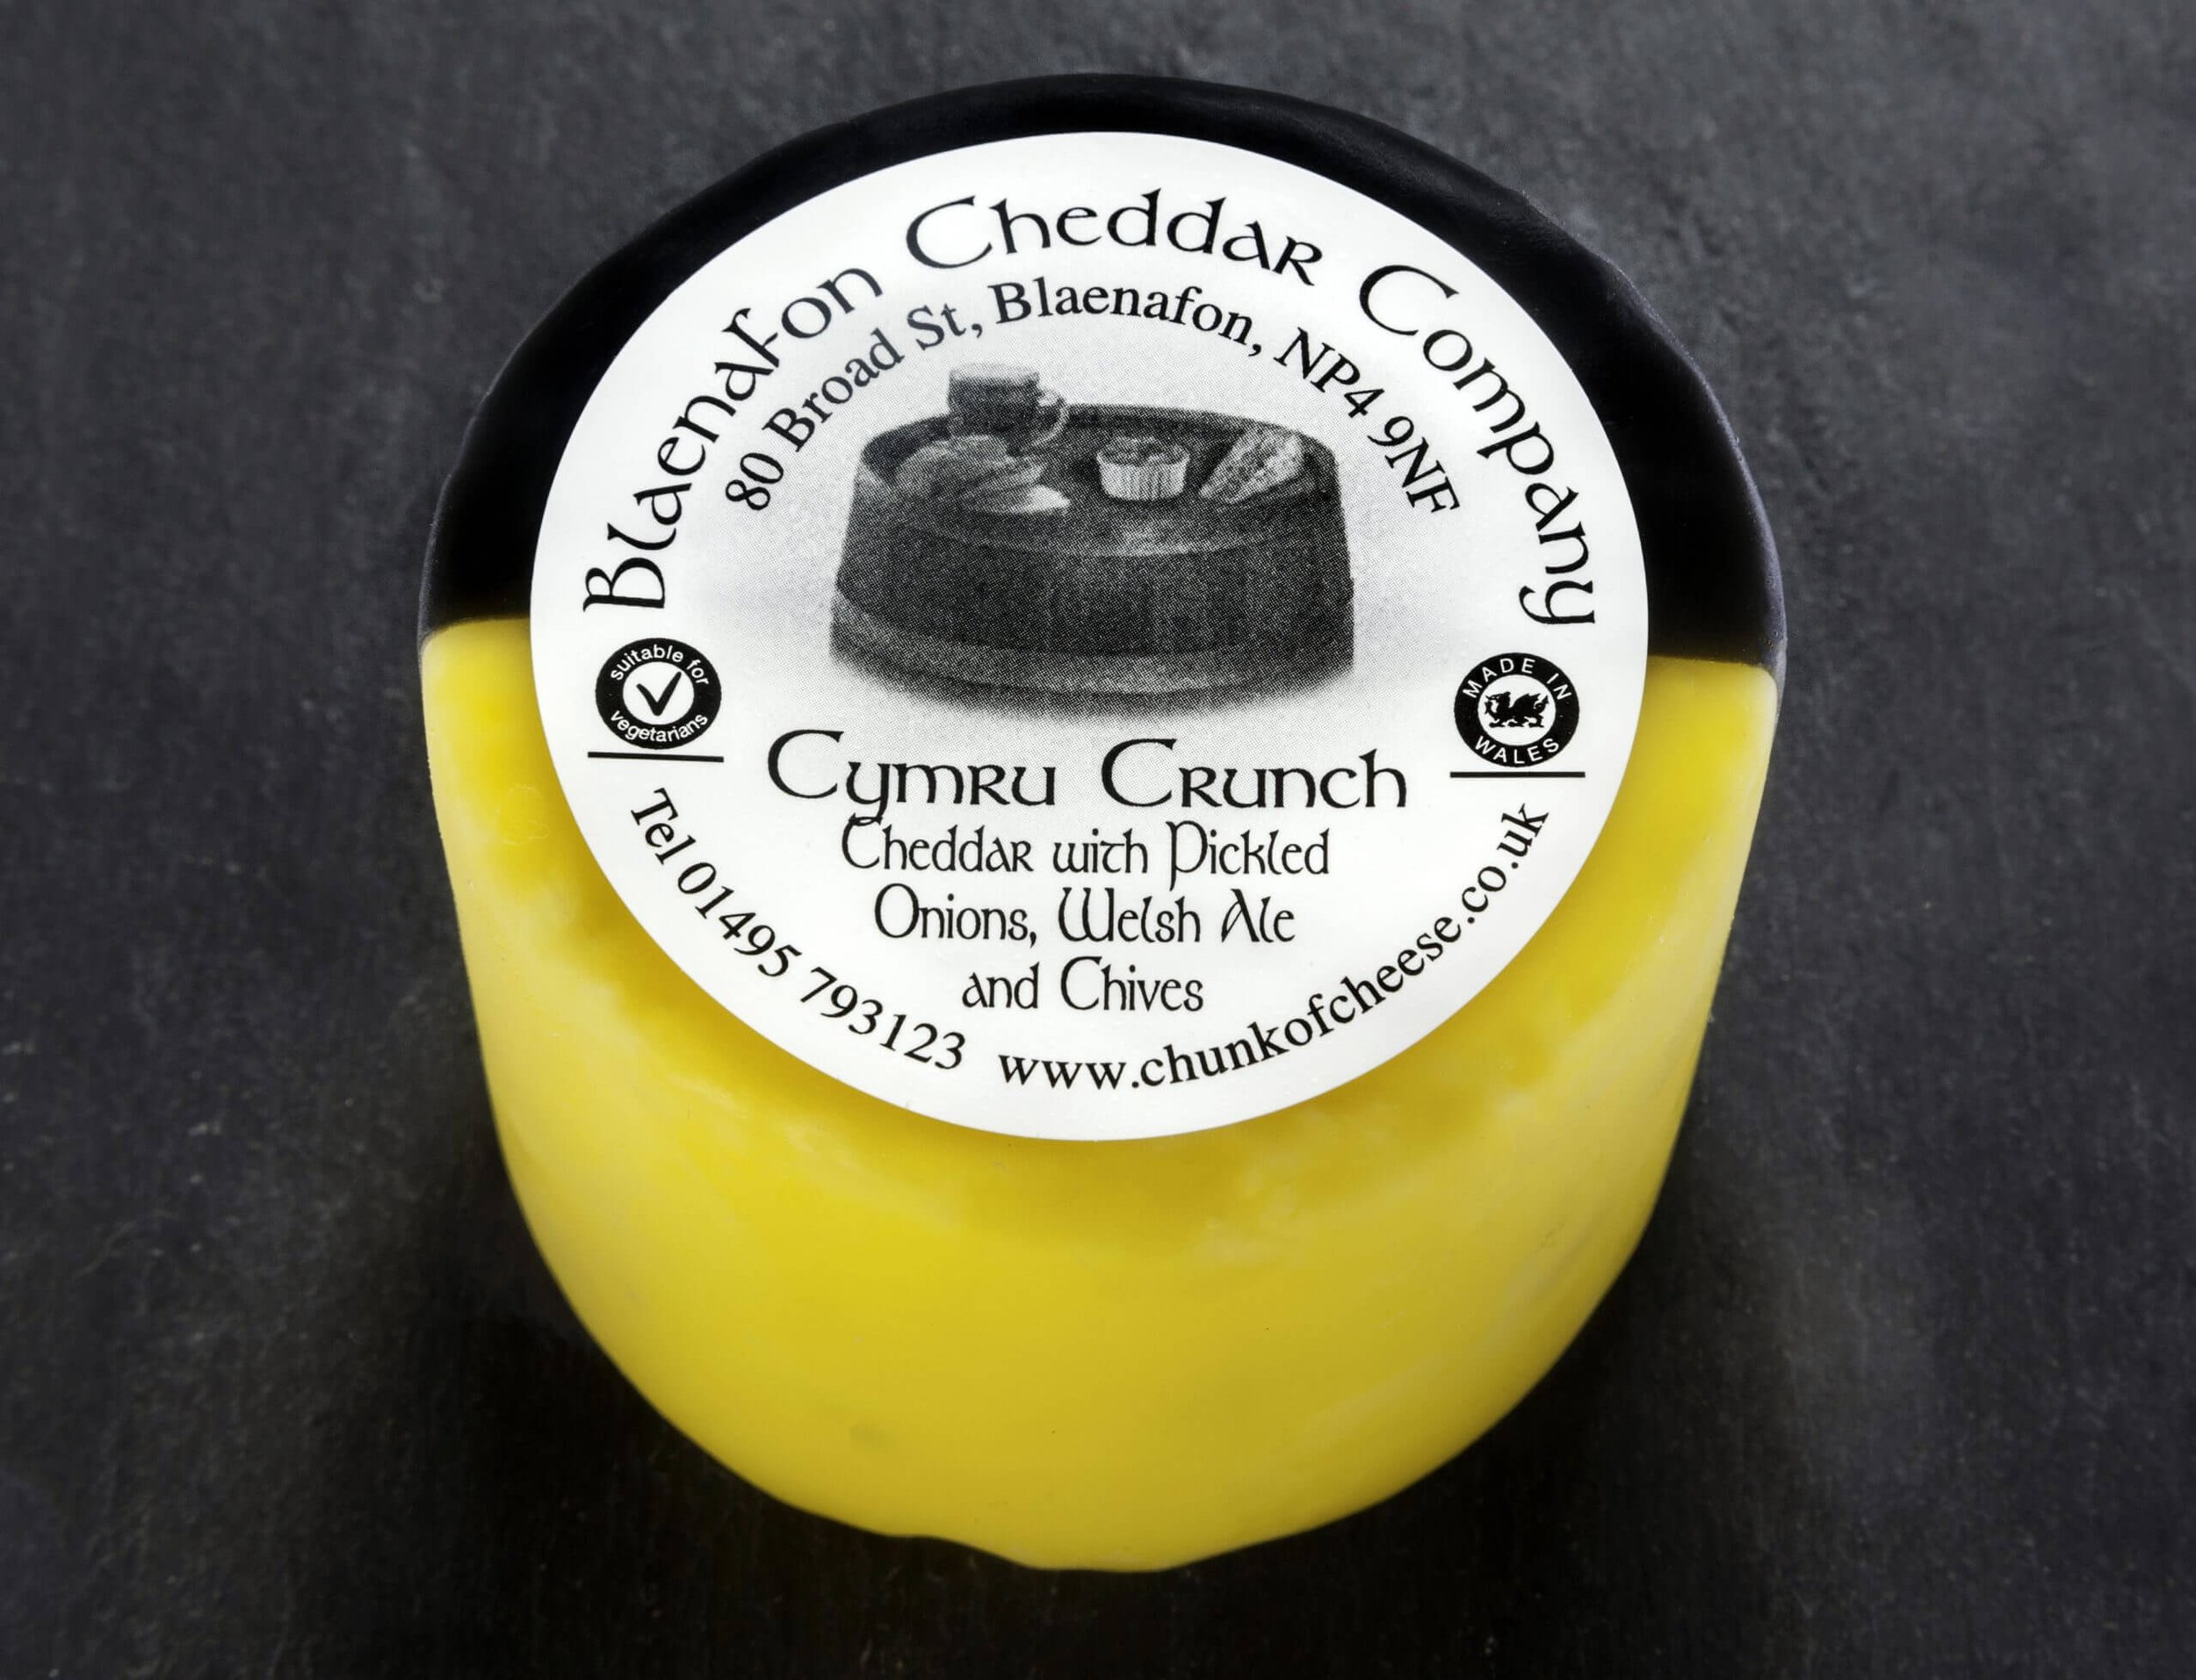 Blaenafon Cheddar Company Cymru Crunch